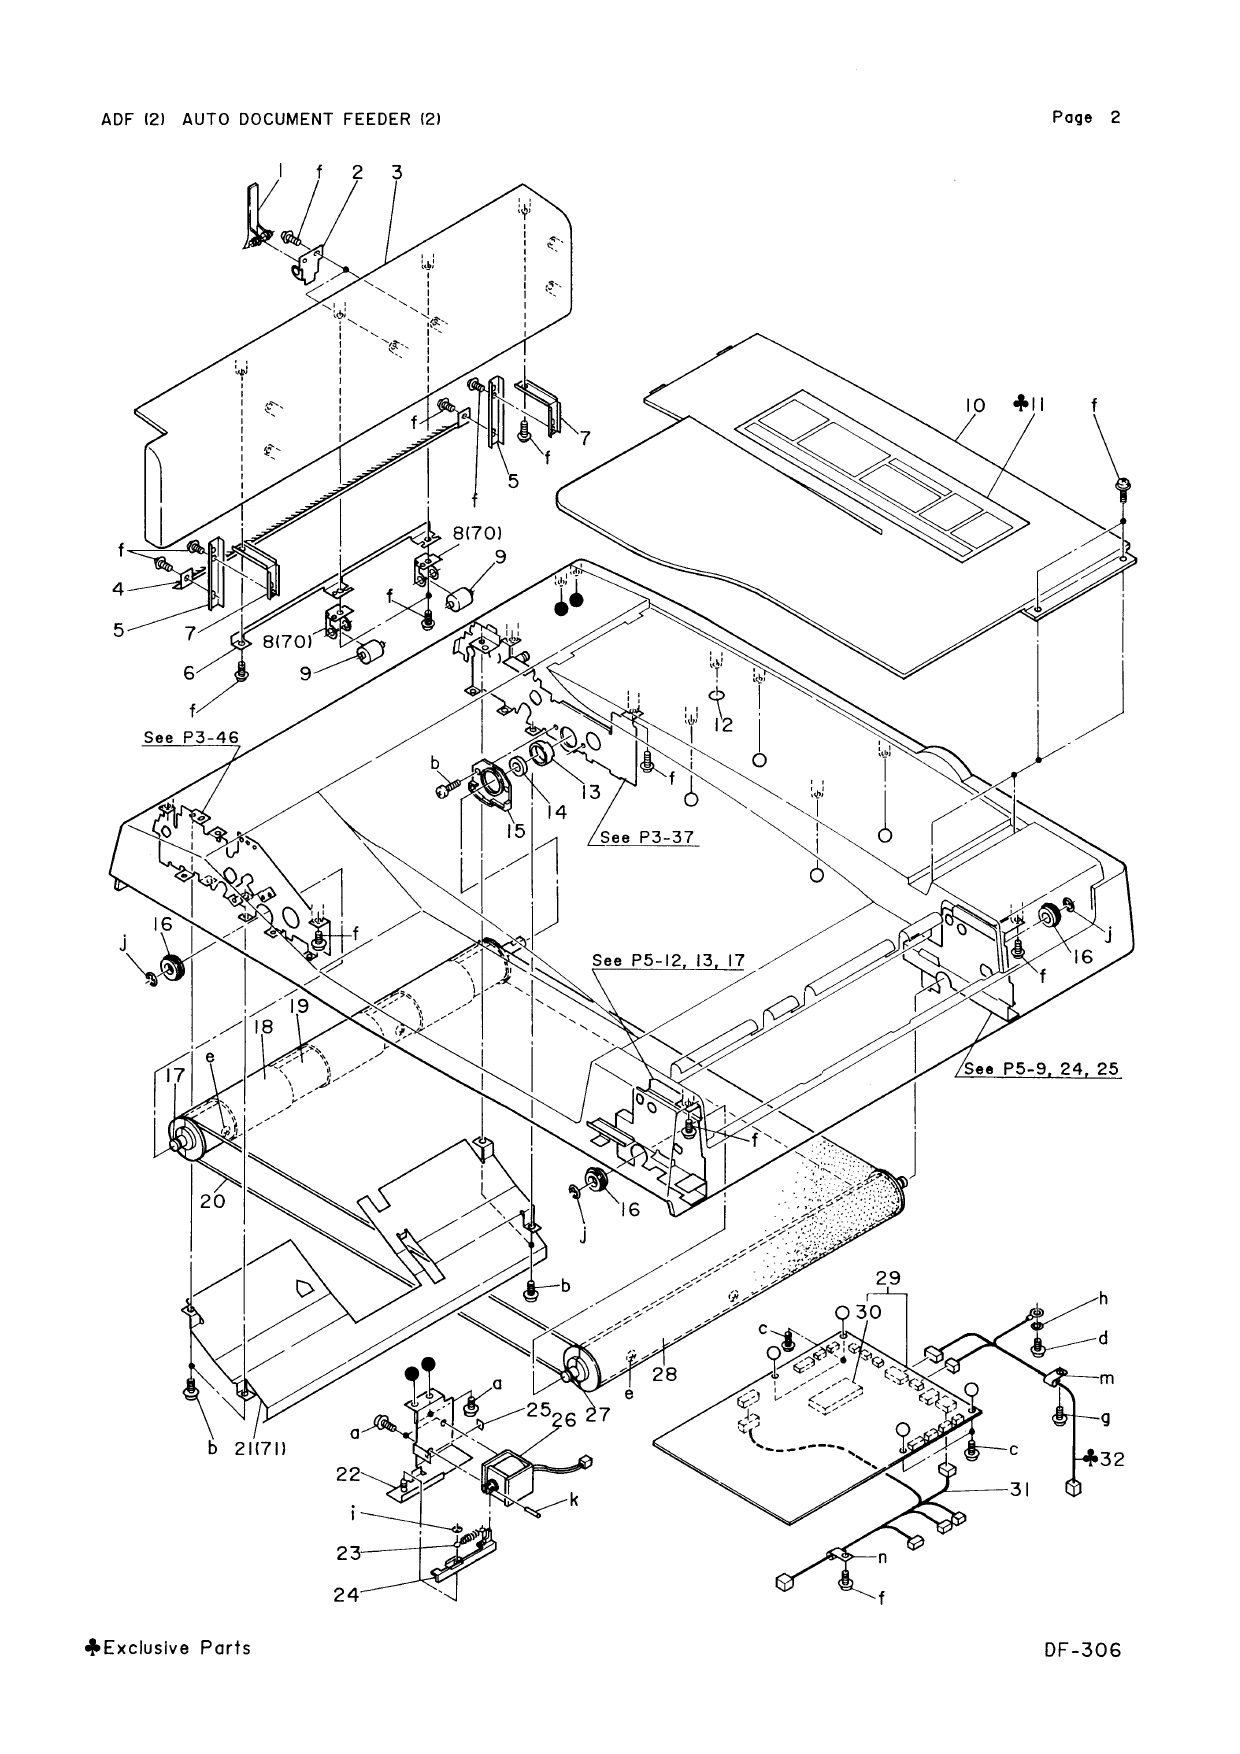 Konica-Minolta Options DF-306 Parts Manual-4